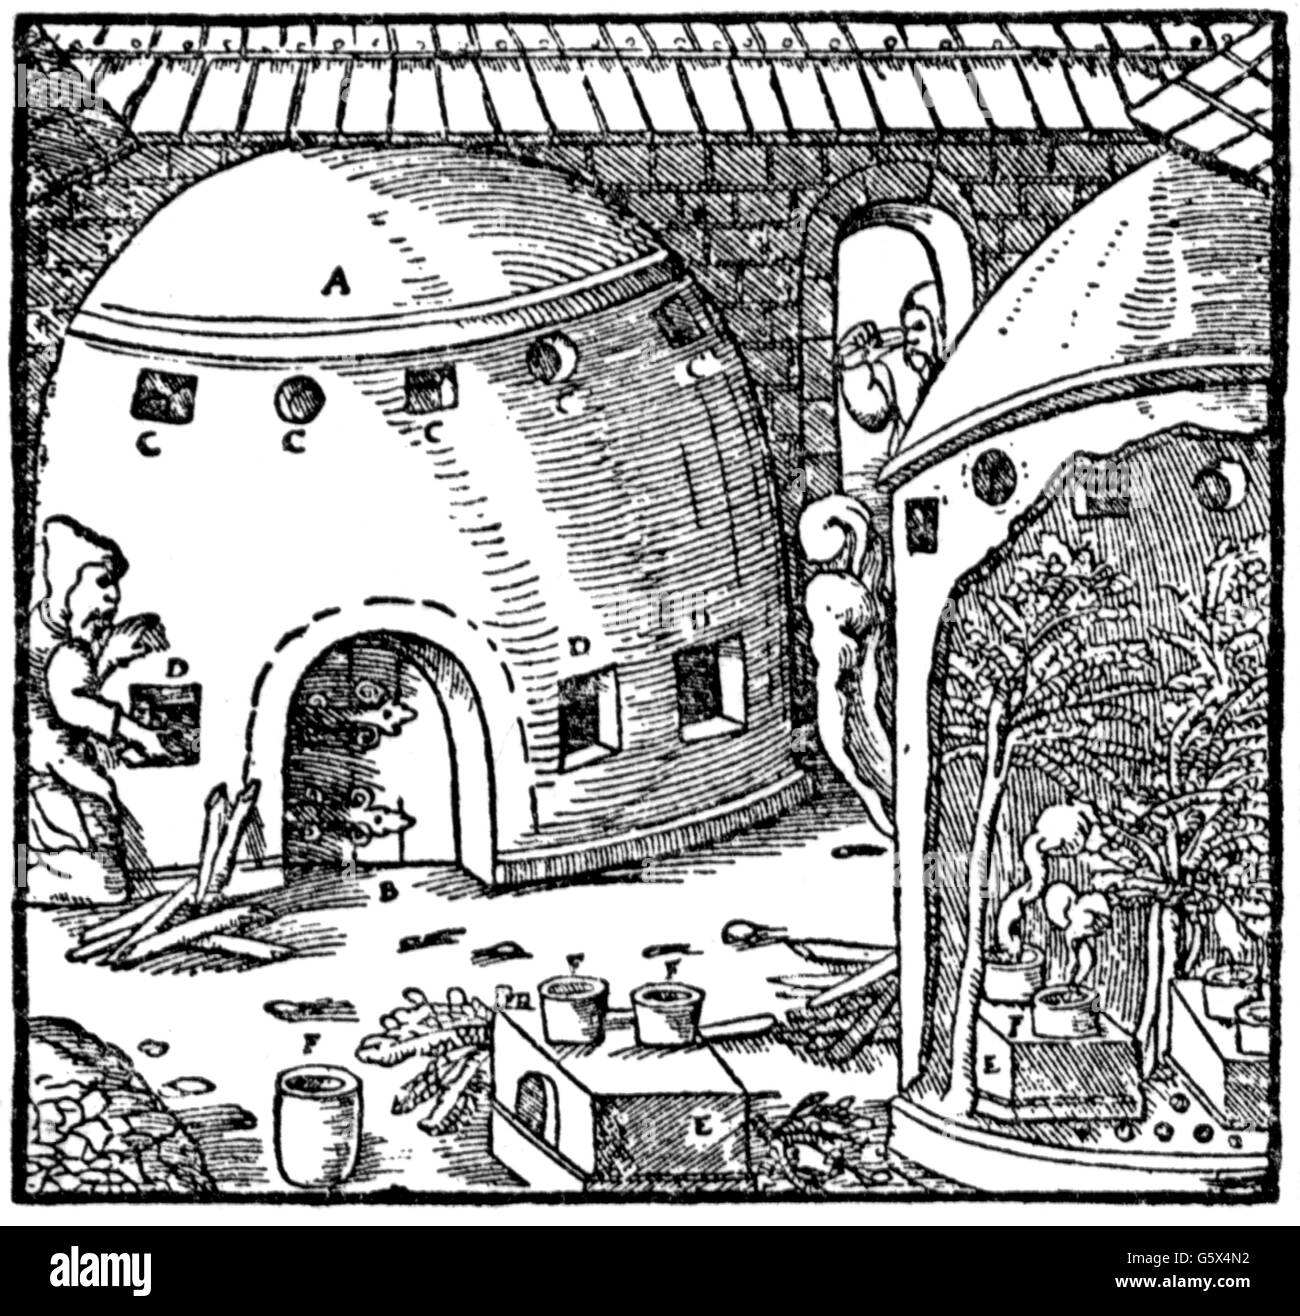 Bergbau, Erzaufbereitung / Metallverarbeitung, Ofen zur Quecksilbergewinnung, Holzschnitt, 1557, Zusatz-Rechte-Clearenzen-nicht vorhanden Stockfoto